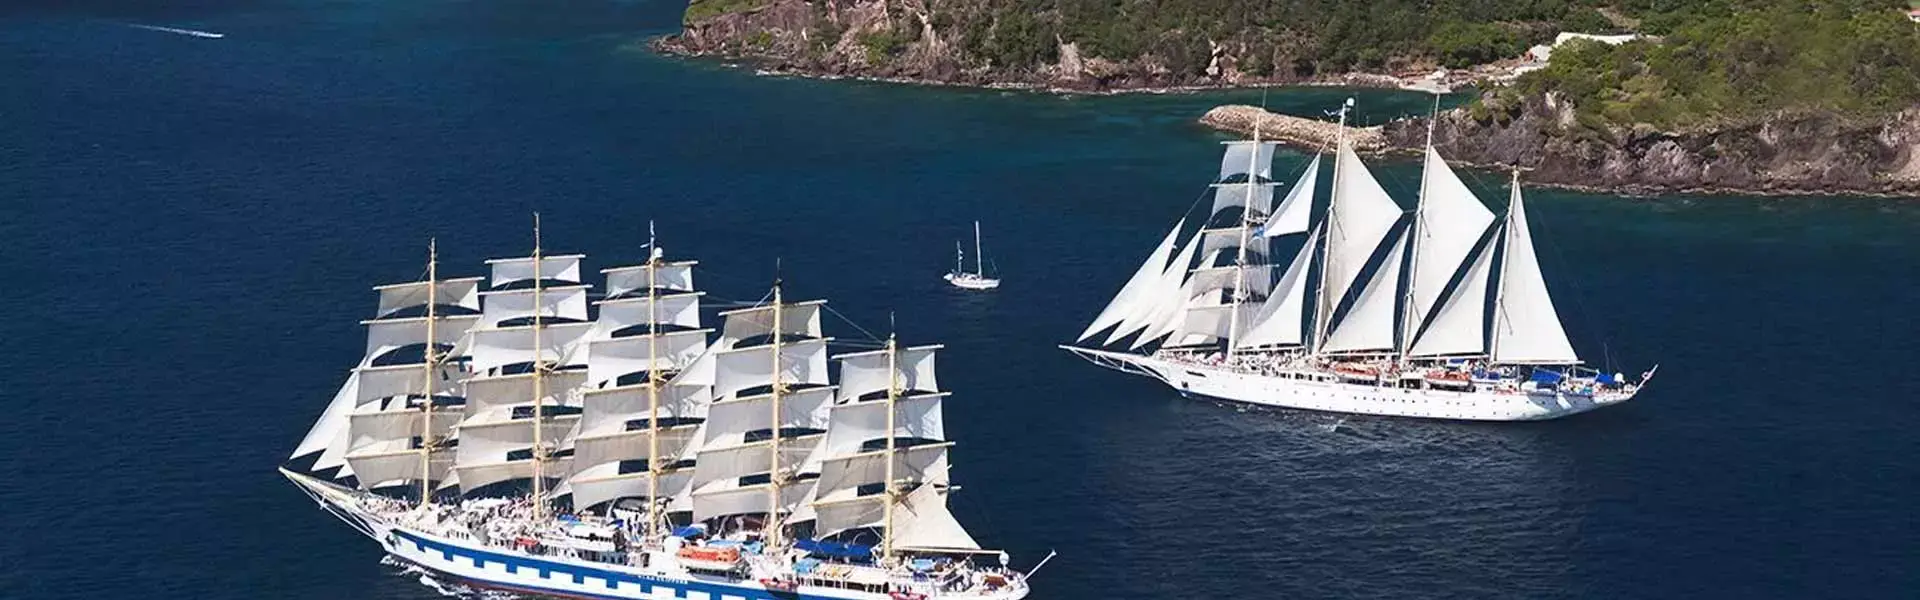 Italy and Mallorca sailing cruise, Bella Italia and the Balearic Islands